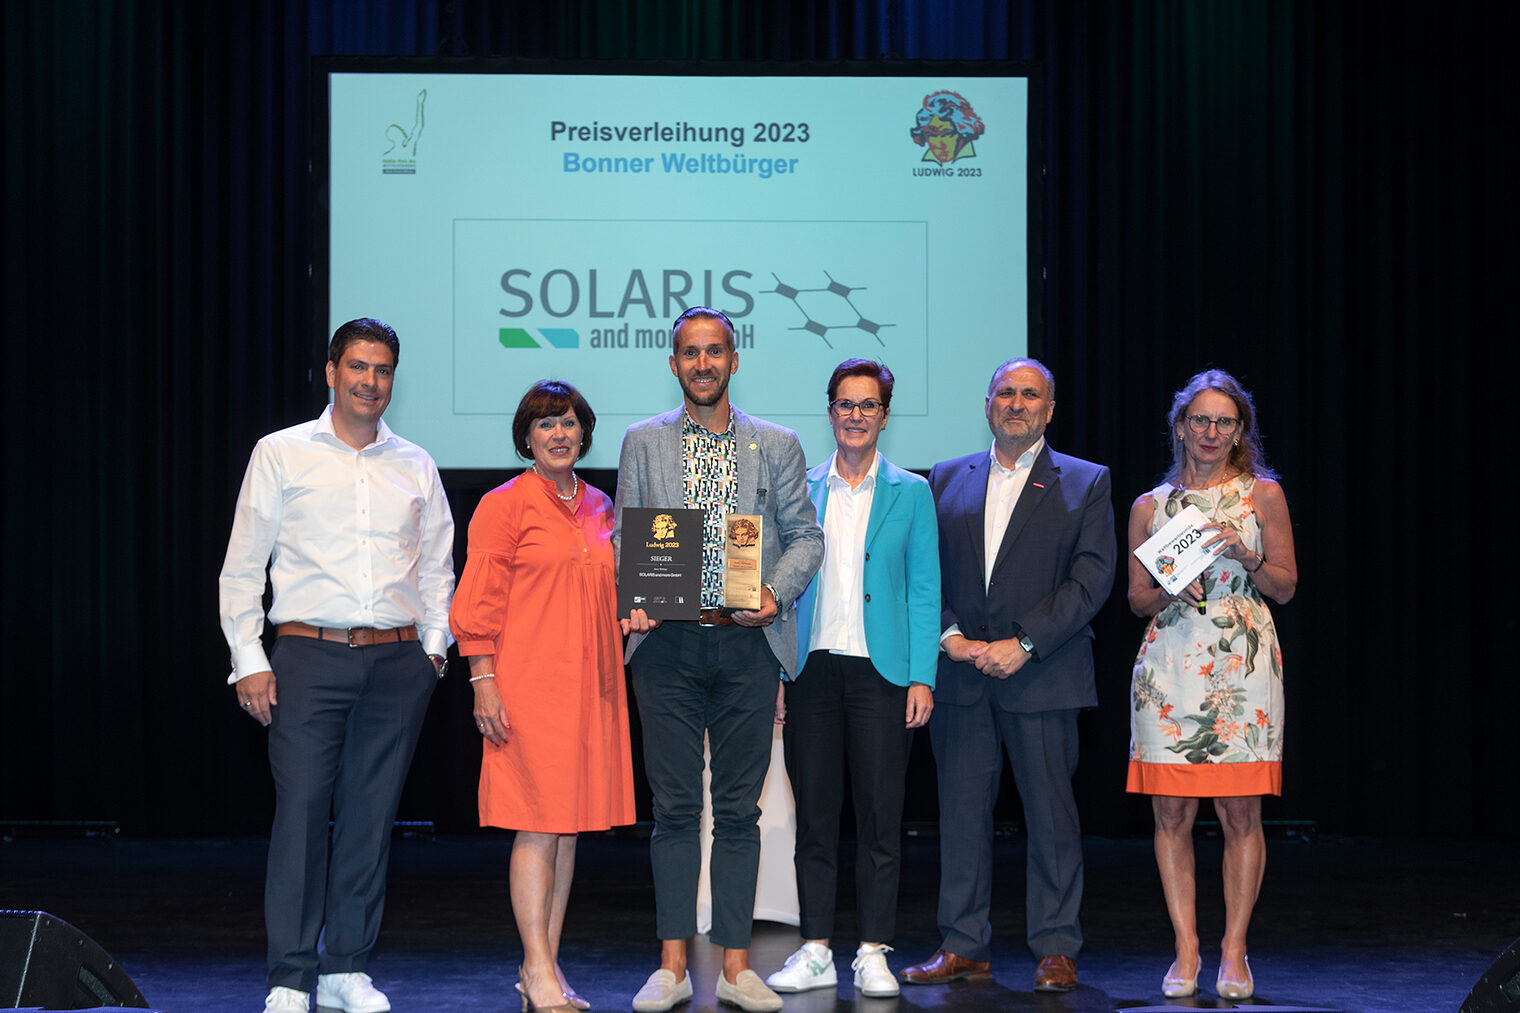 In der Kategorie Bonner Weltbürger siegte das Hennefer Solarunternehmen SOLARIS and more GmbH.